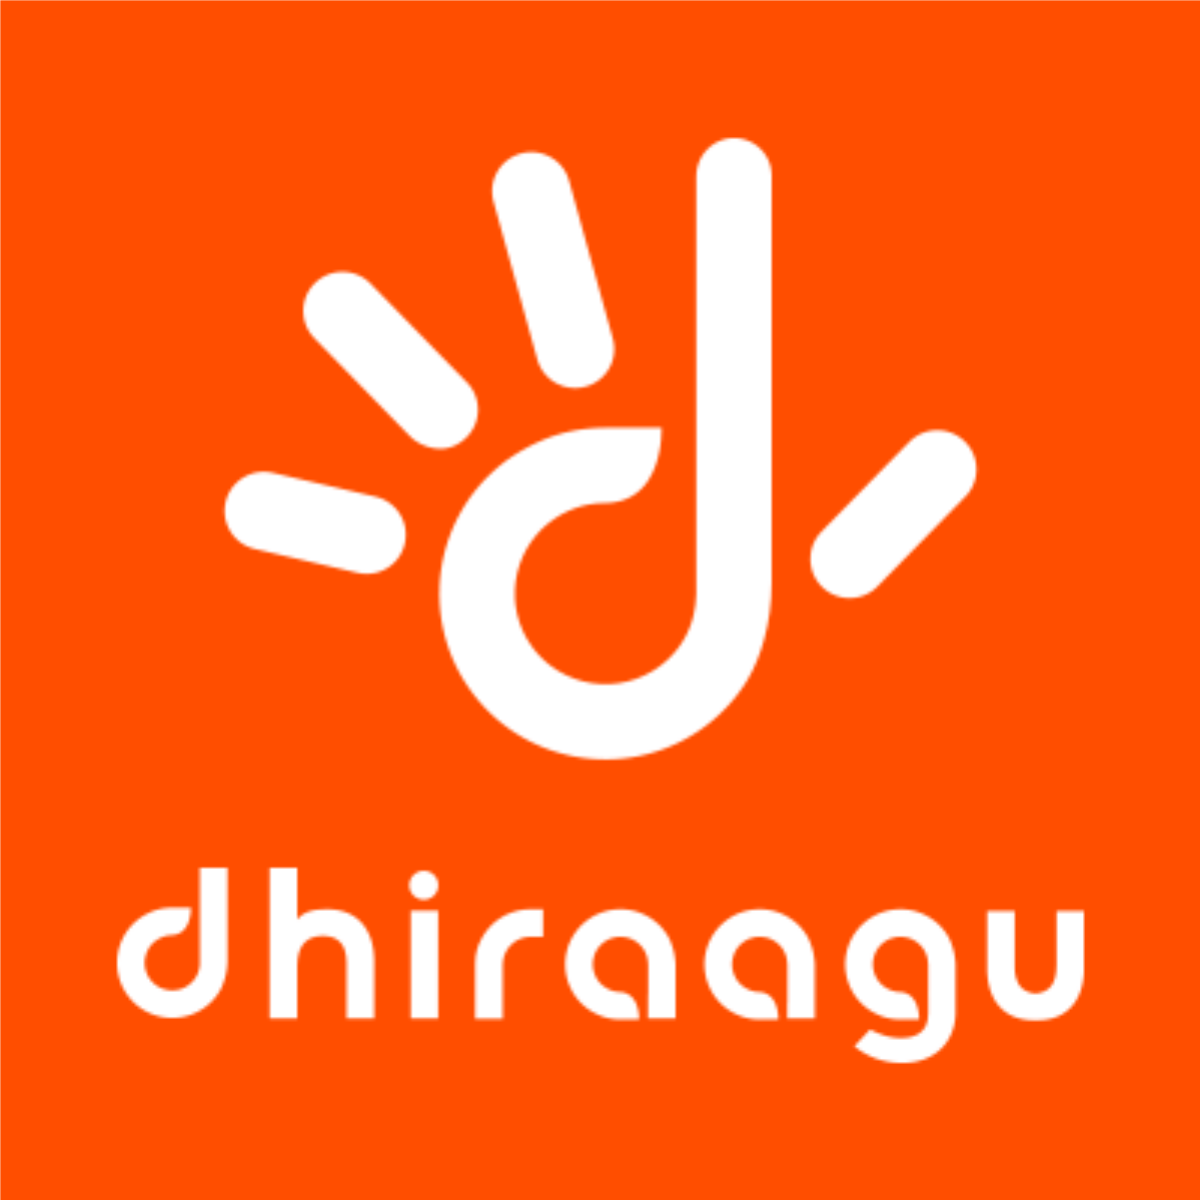 Dhiraagu Logo photo - 1